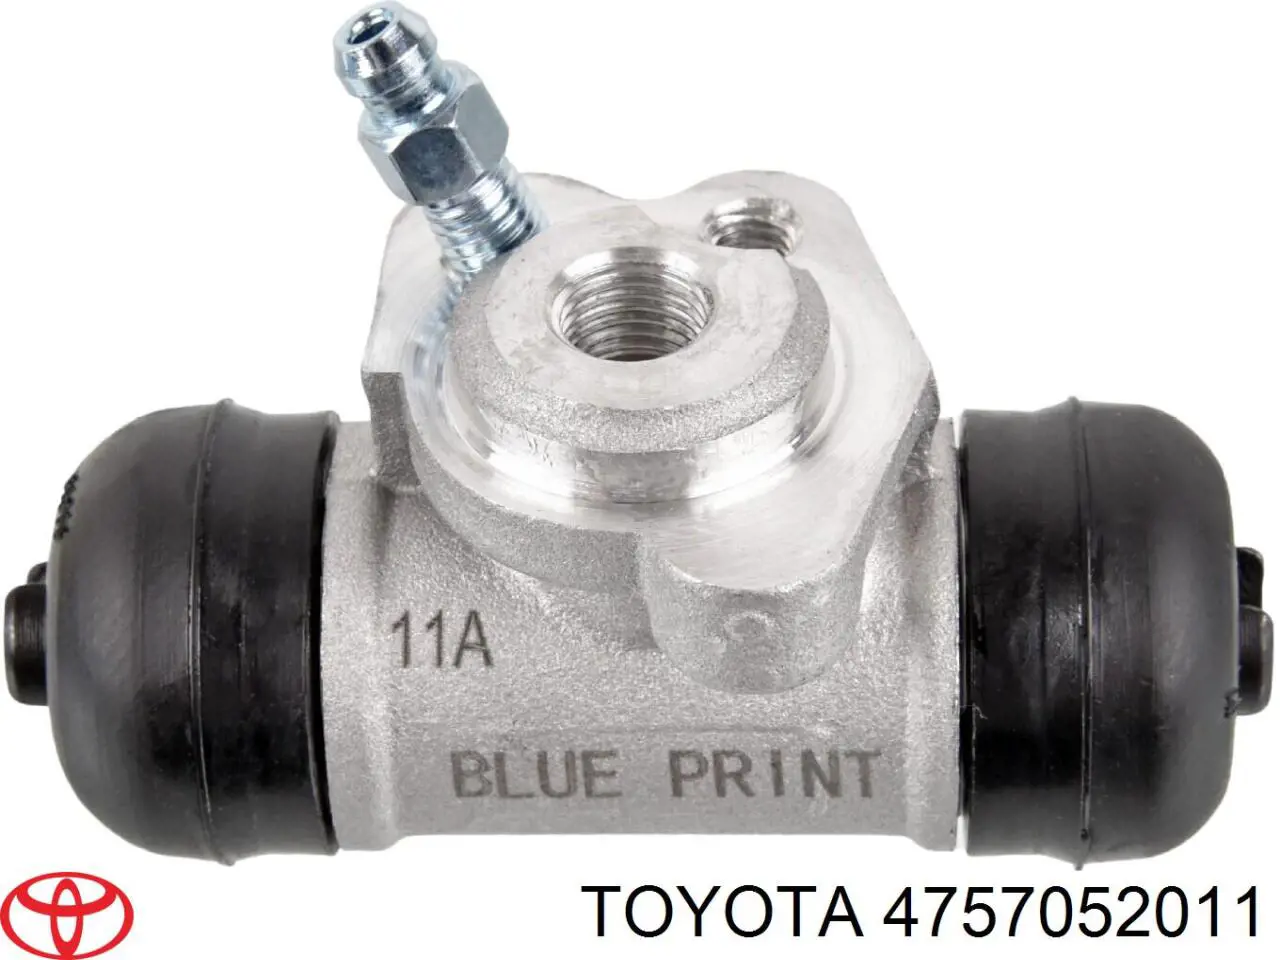 4757052011 Toyota cilindro de freno de rueda trasero